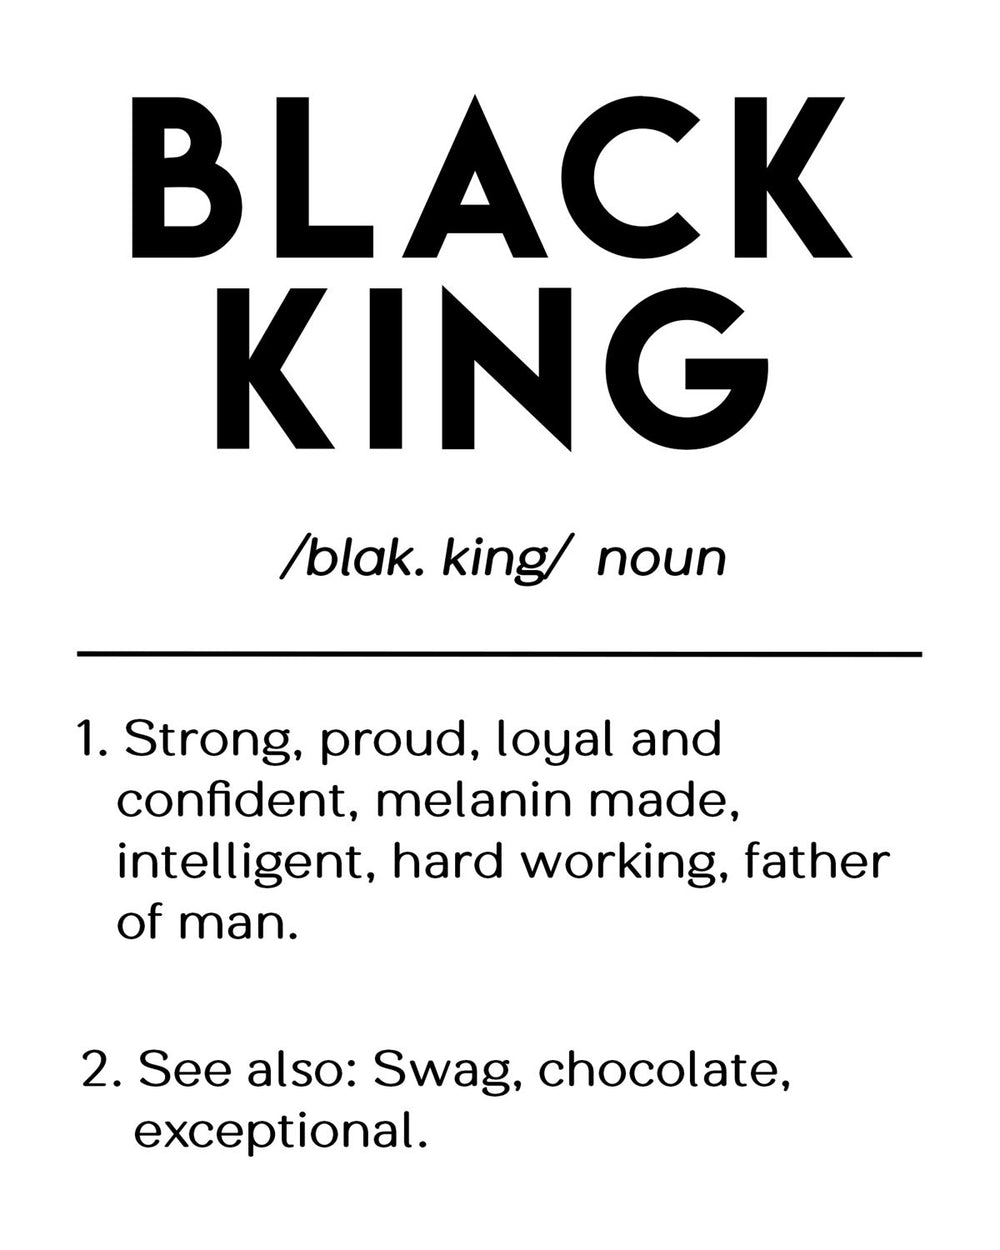 Black King Definition